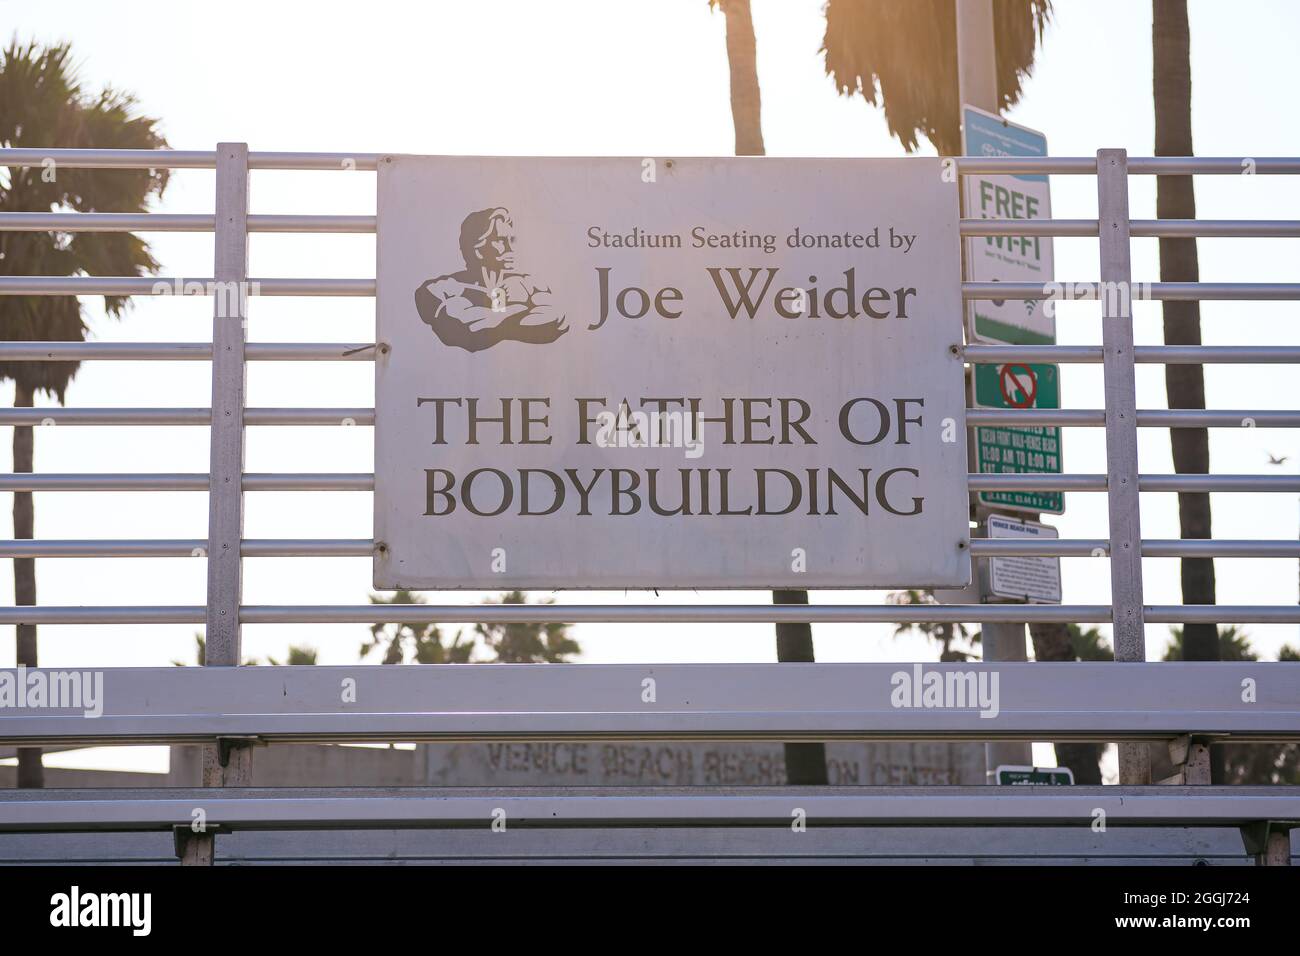 LOS ANGELES, STATI UNITI D'AMERICA - 11 ago 2018: Los Angeles, California, Stati Uniti d'America - 11 agosto 2018: Muscle Beach, Venice Beach dove è nato il bodybuilding Foto Stock